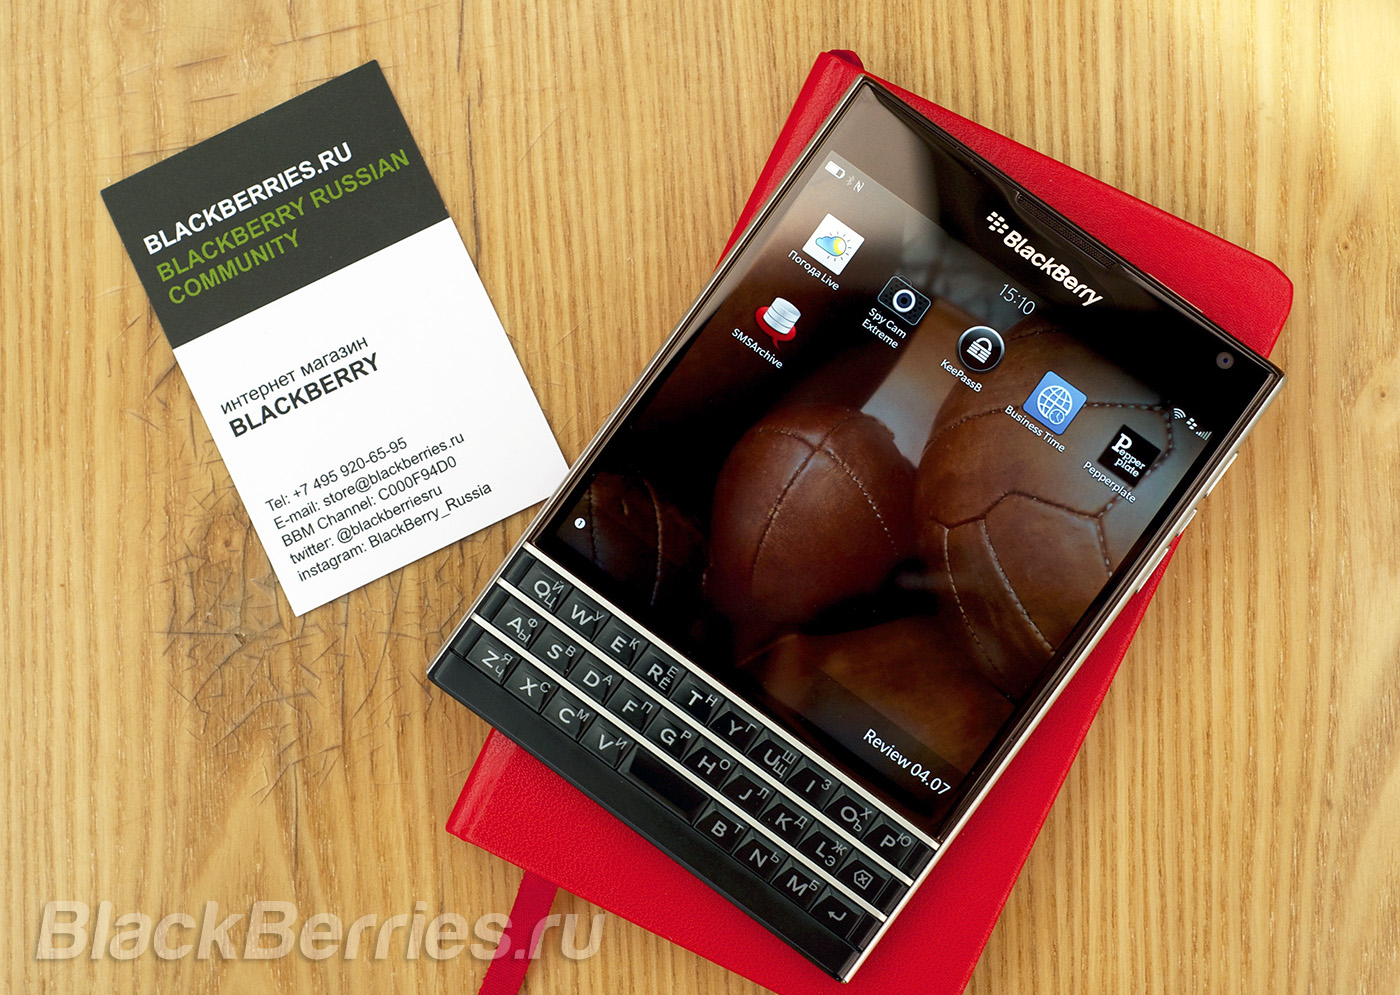 BlackBerry-Passport-Apps-05-07-10